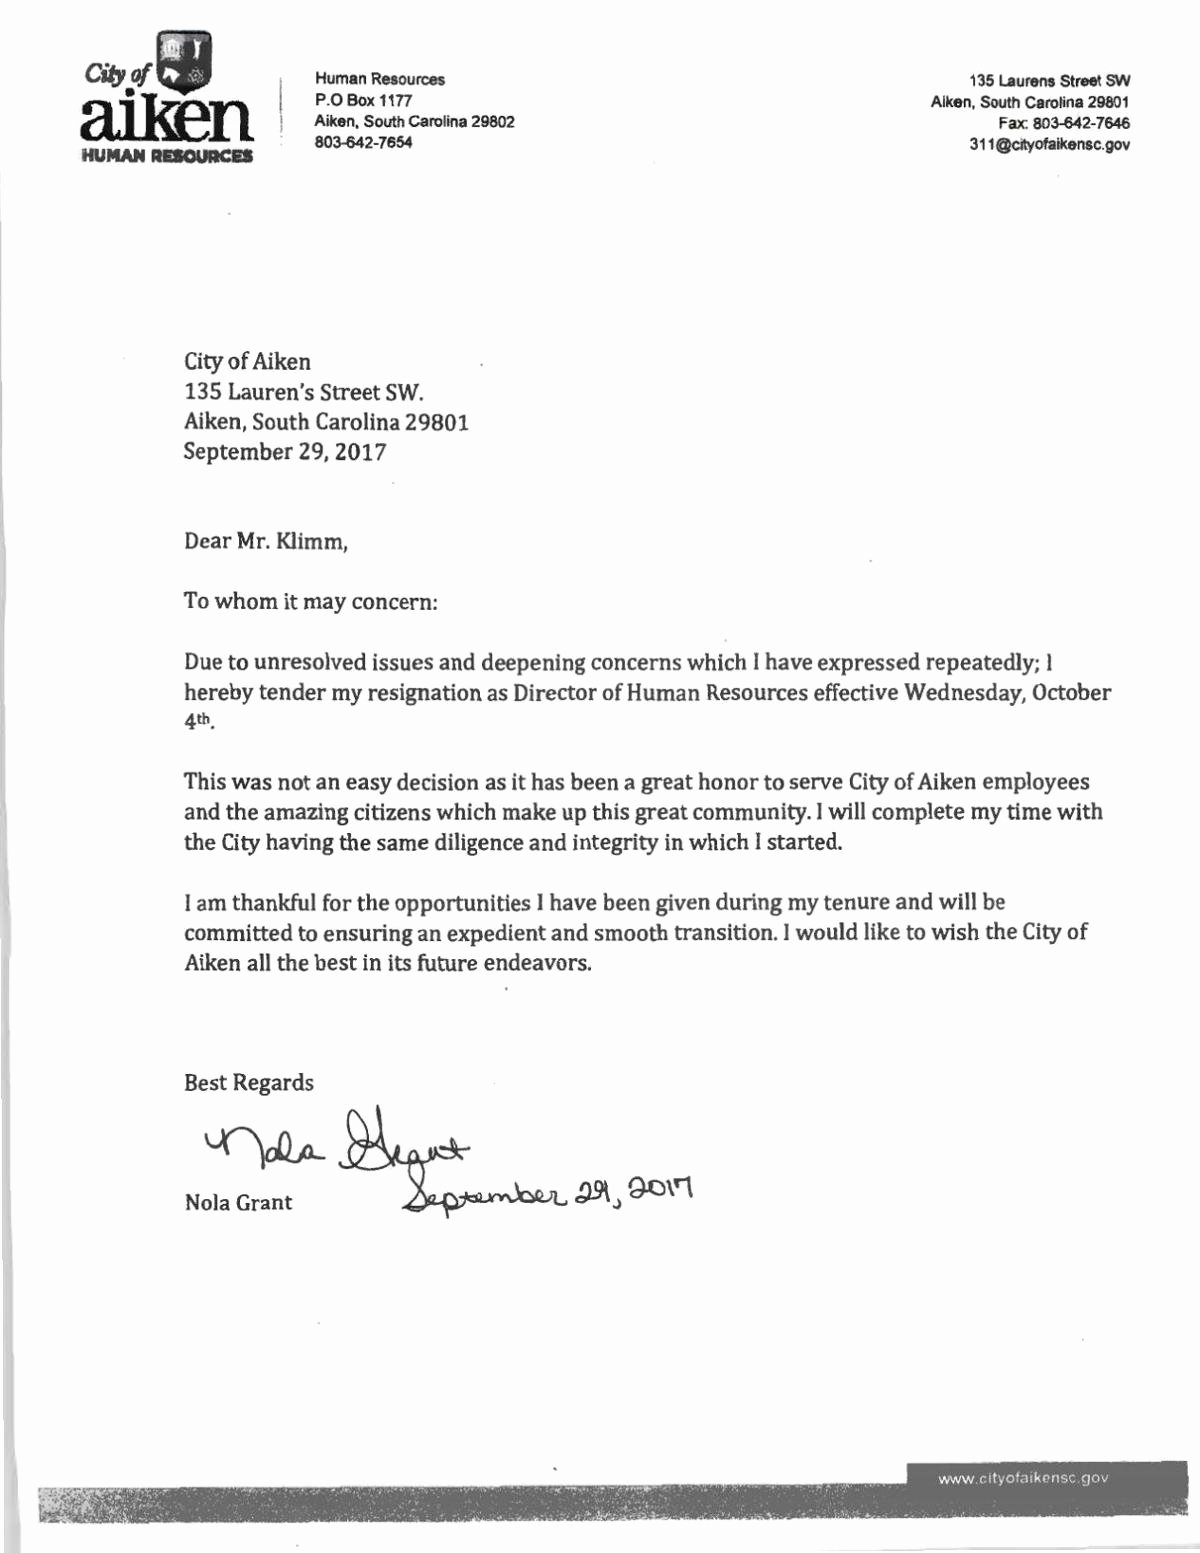 Resignation Letter for Work Best Of Nola Grant Resignation Letter